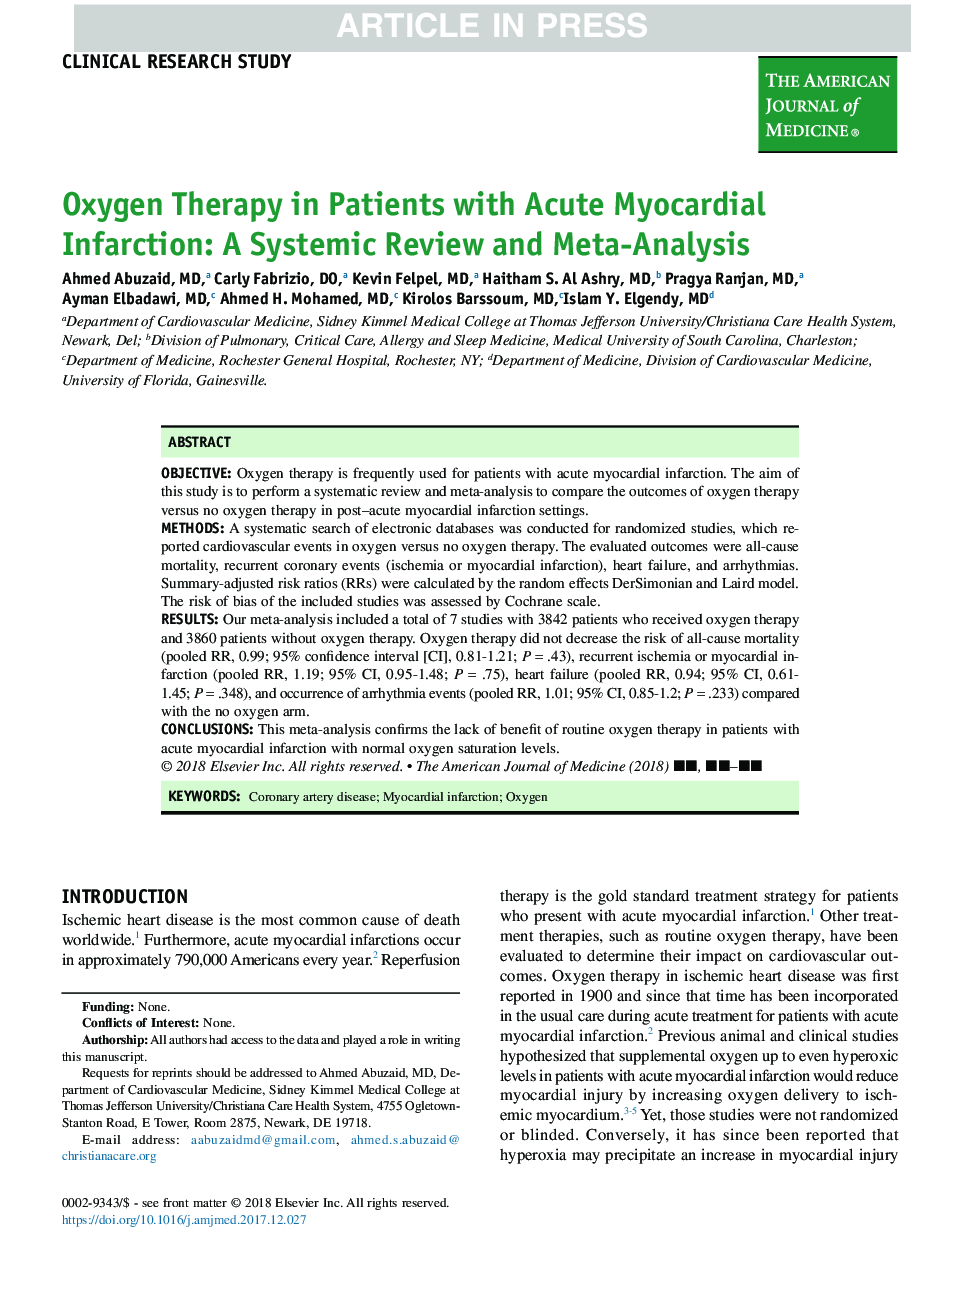 درمان اکسیژن در بیماران مبتلا به انفارکتوس حاد قلبی: یک بررسی سیستماتیک و متاآنالیز 